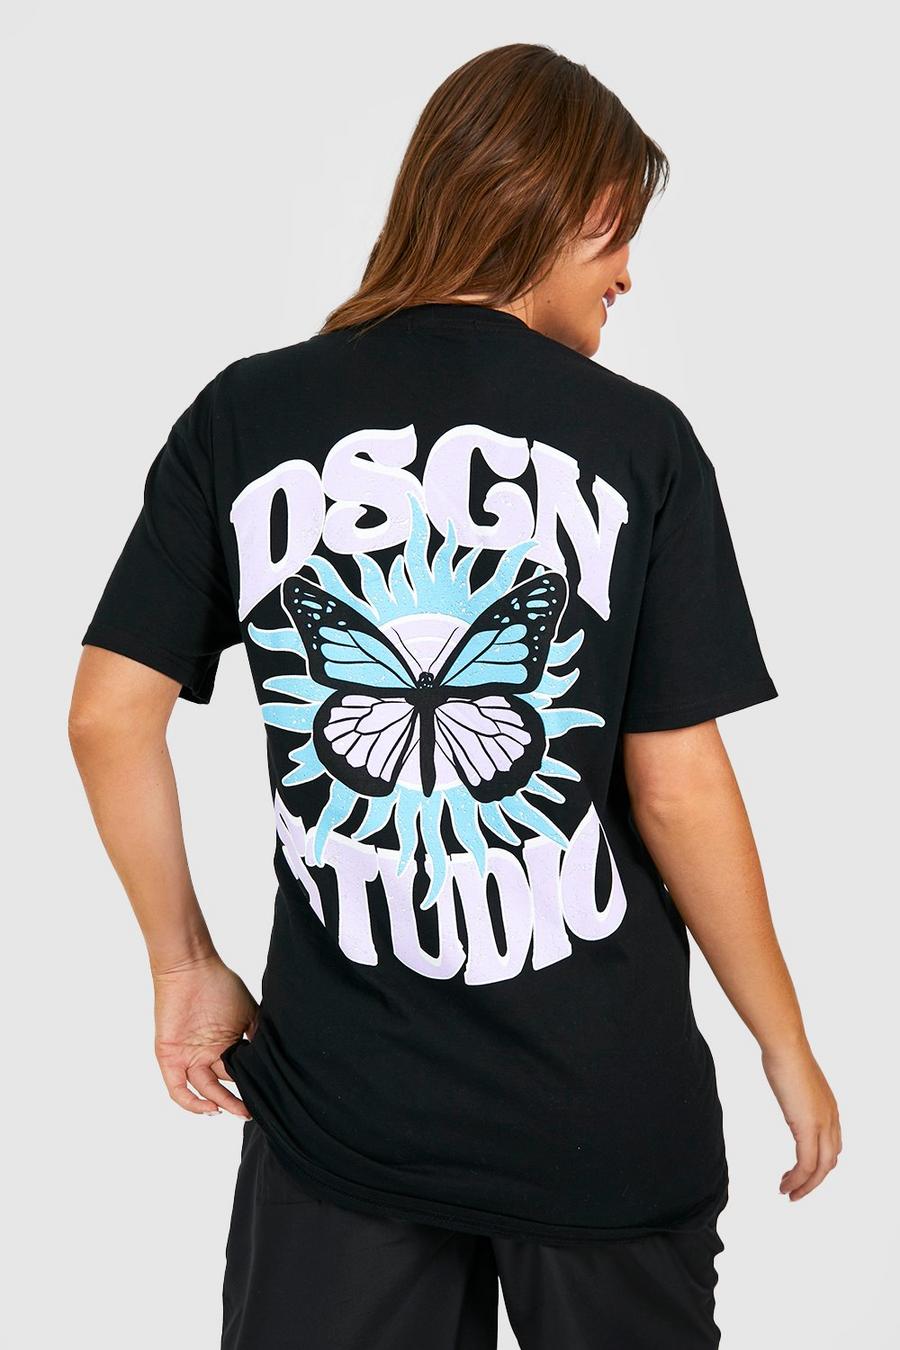 T-shirt Premaman Dsgn Studio con farfalle celesti, Black nero